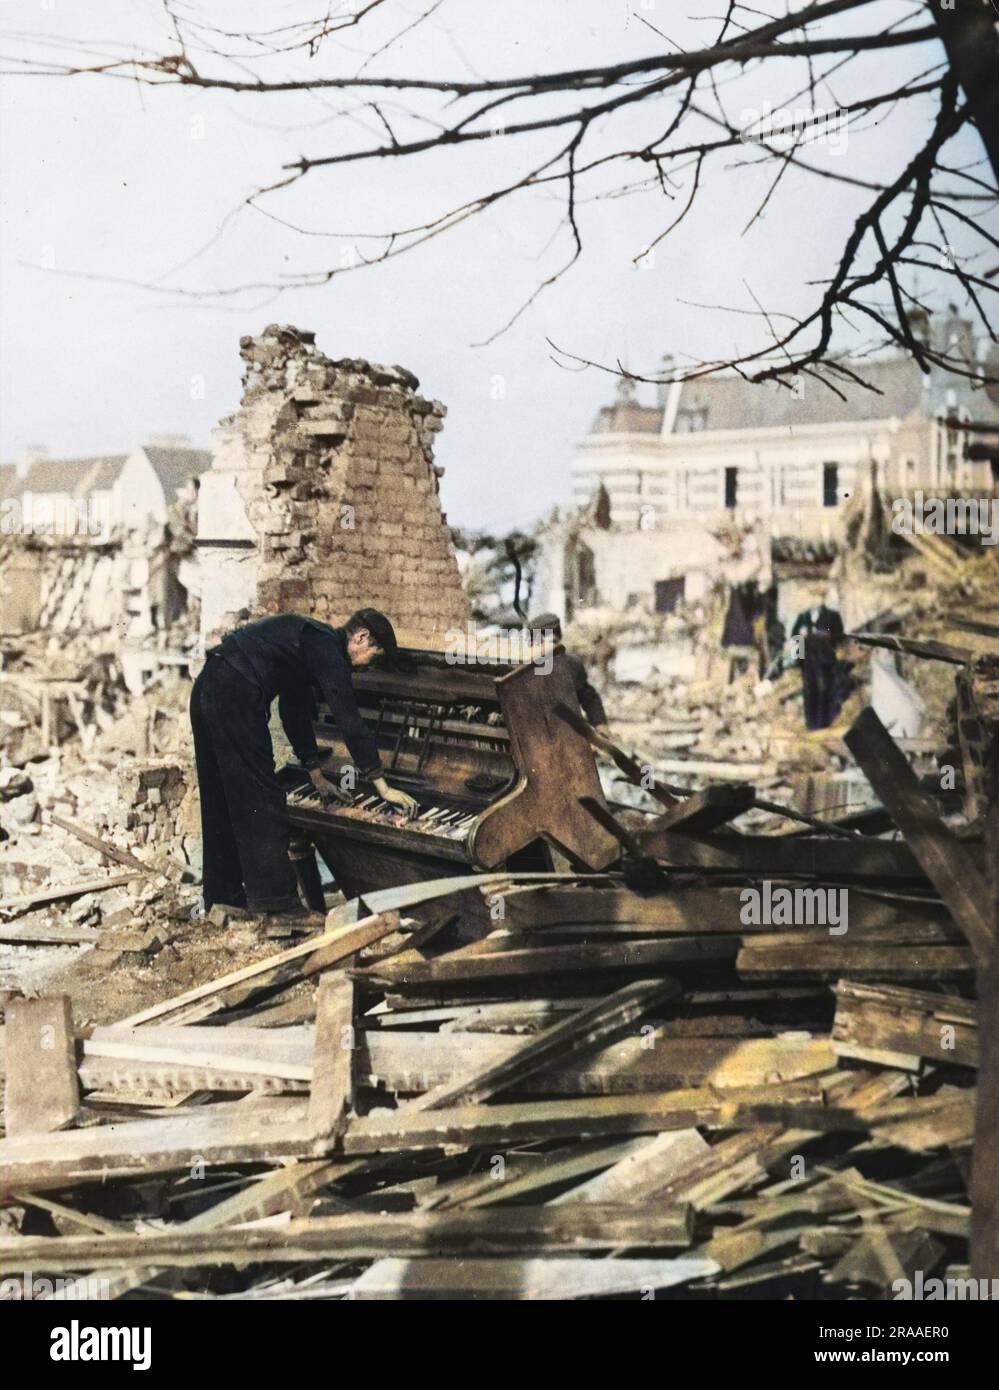 Un des hommes travaillant sur le décomiement des débris à Londres a réussi à se reposer une mélodie de ce piano battu û vers la fin de 1940. Date: Fin 1940 Banque D'Images